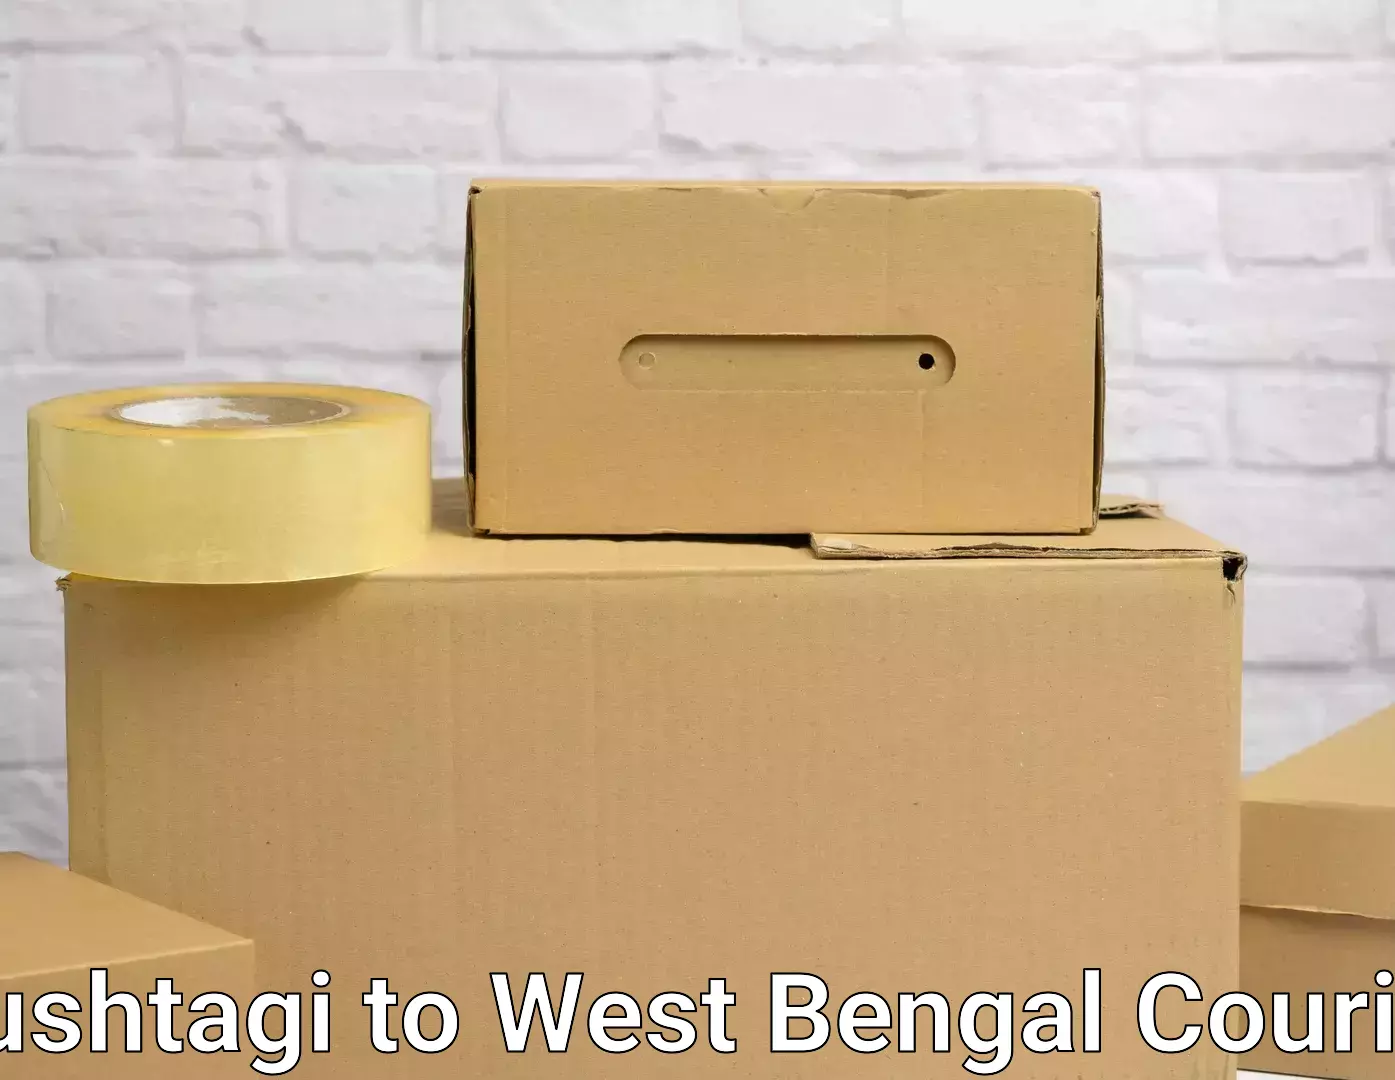 Professional packing services Kushtagi to Siliguri